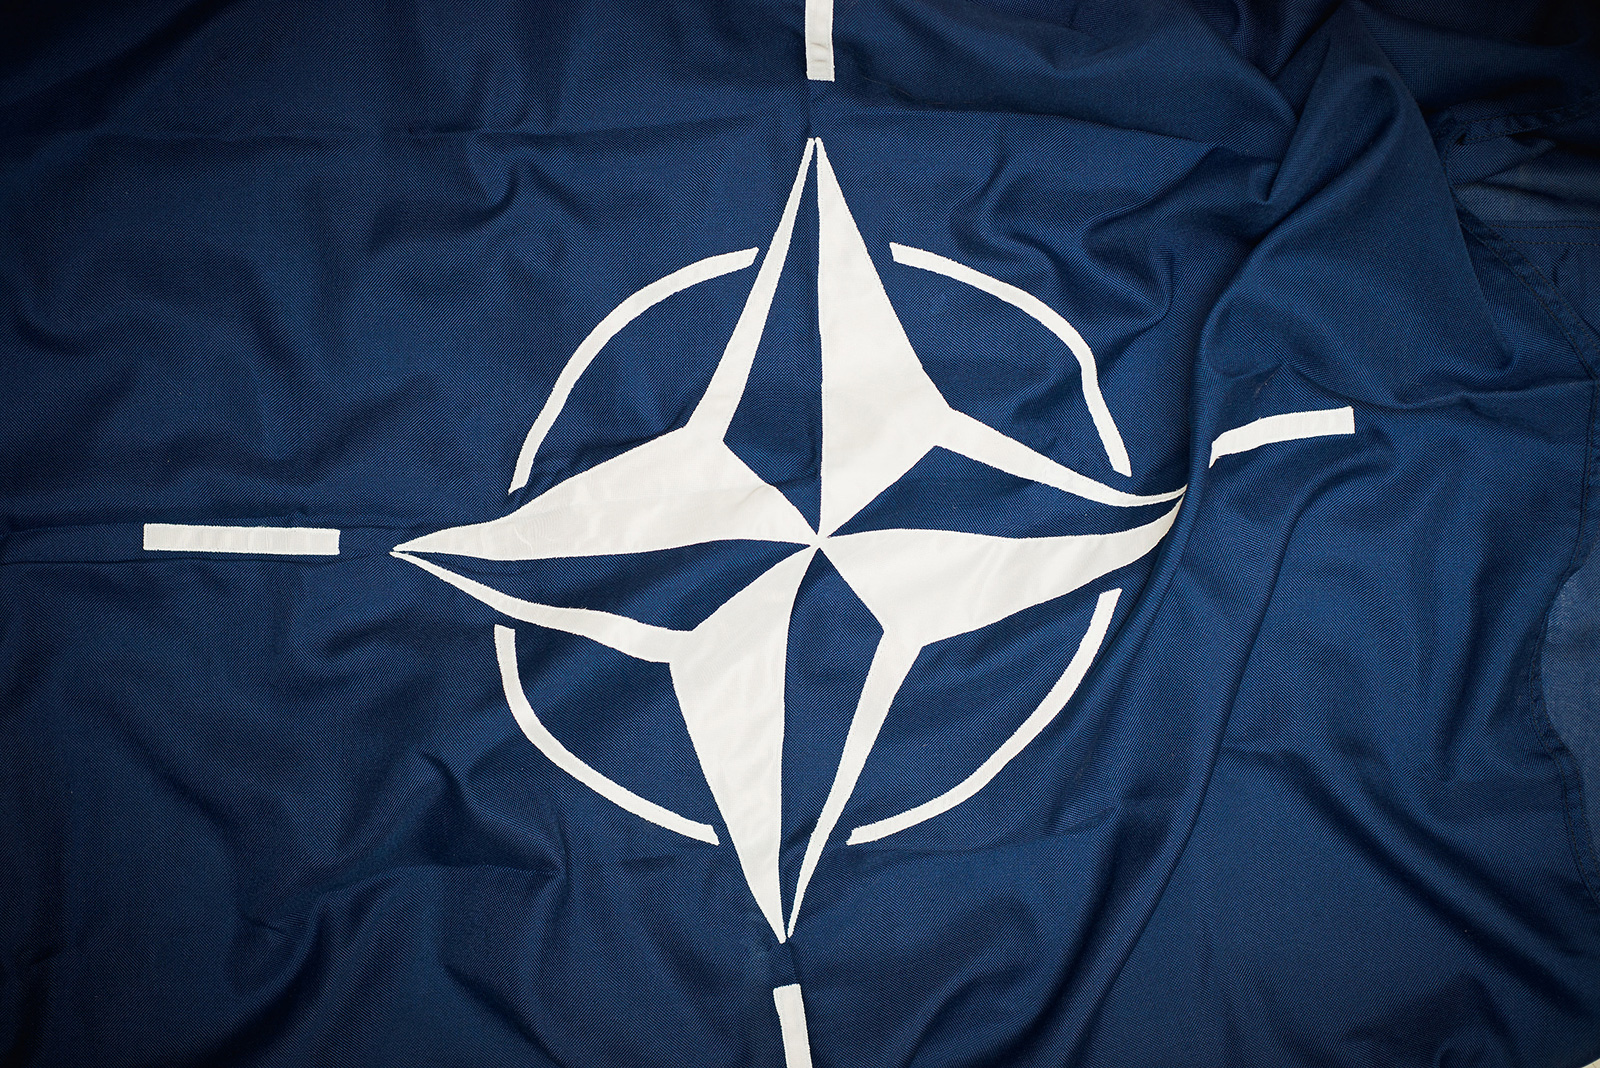 Ruđer predstavlja jedan od najvećih NATO SPS projekata u Hrvatskoj